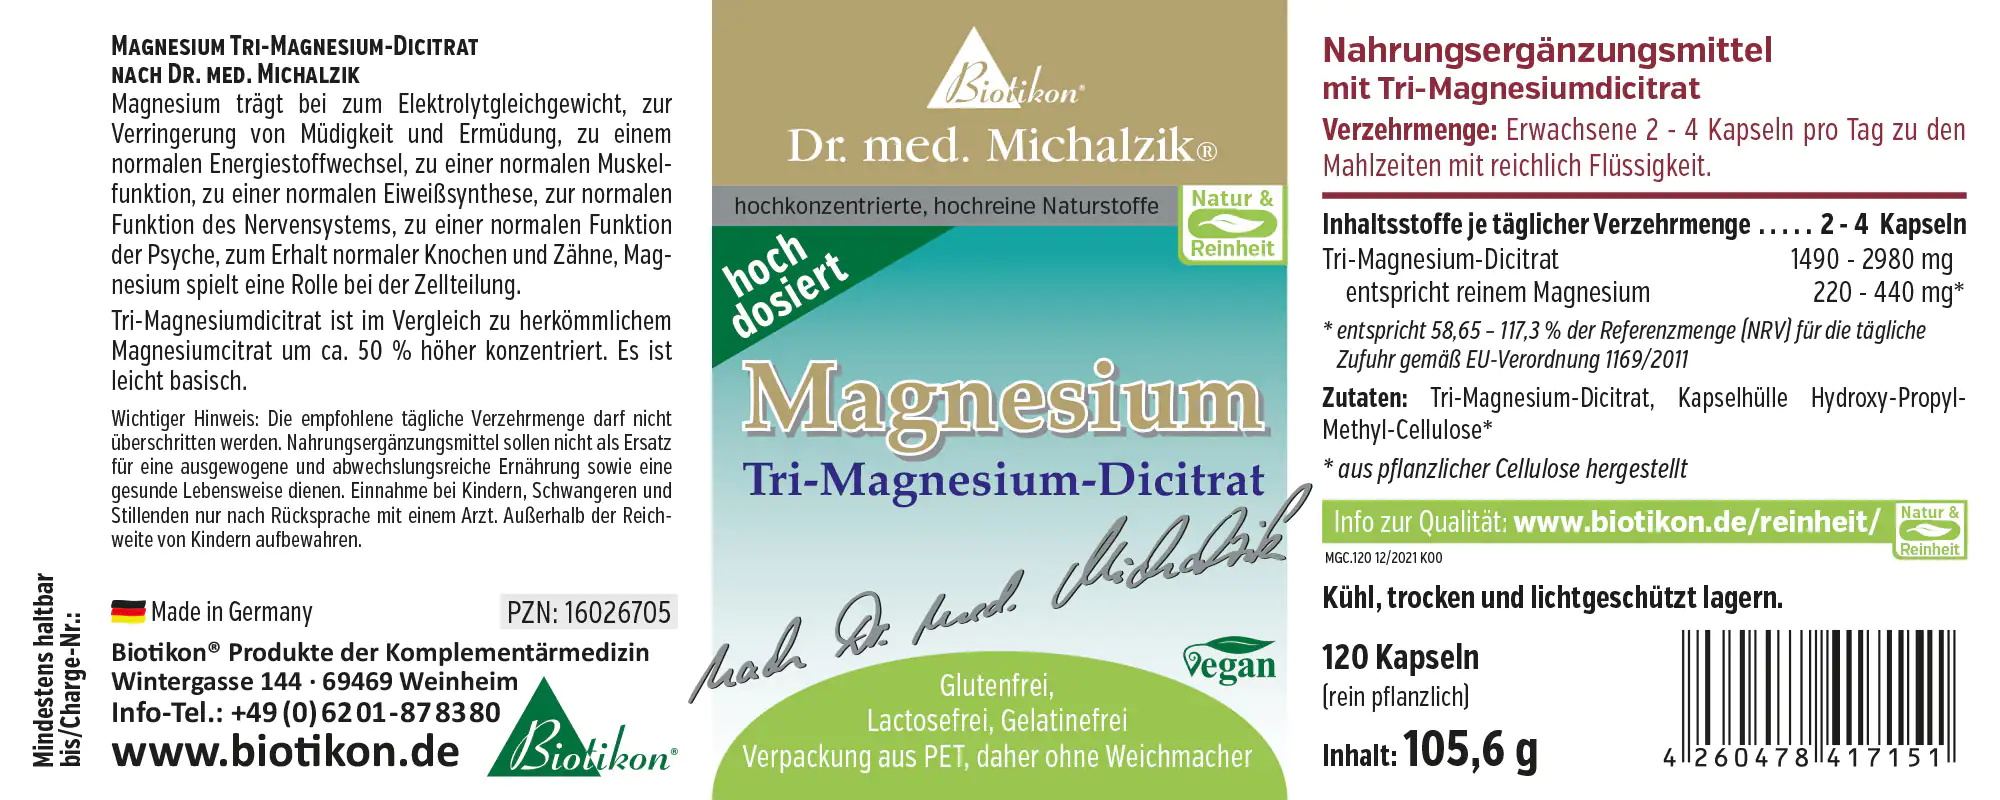 Magnésium - dicitrate de tri-magnésium